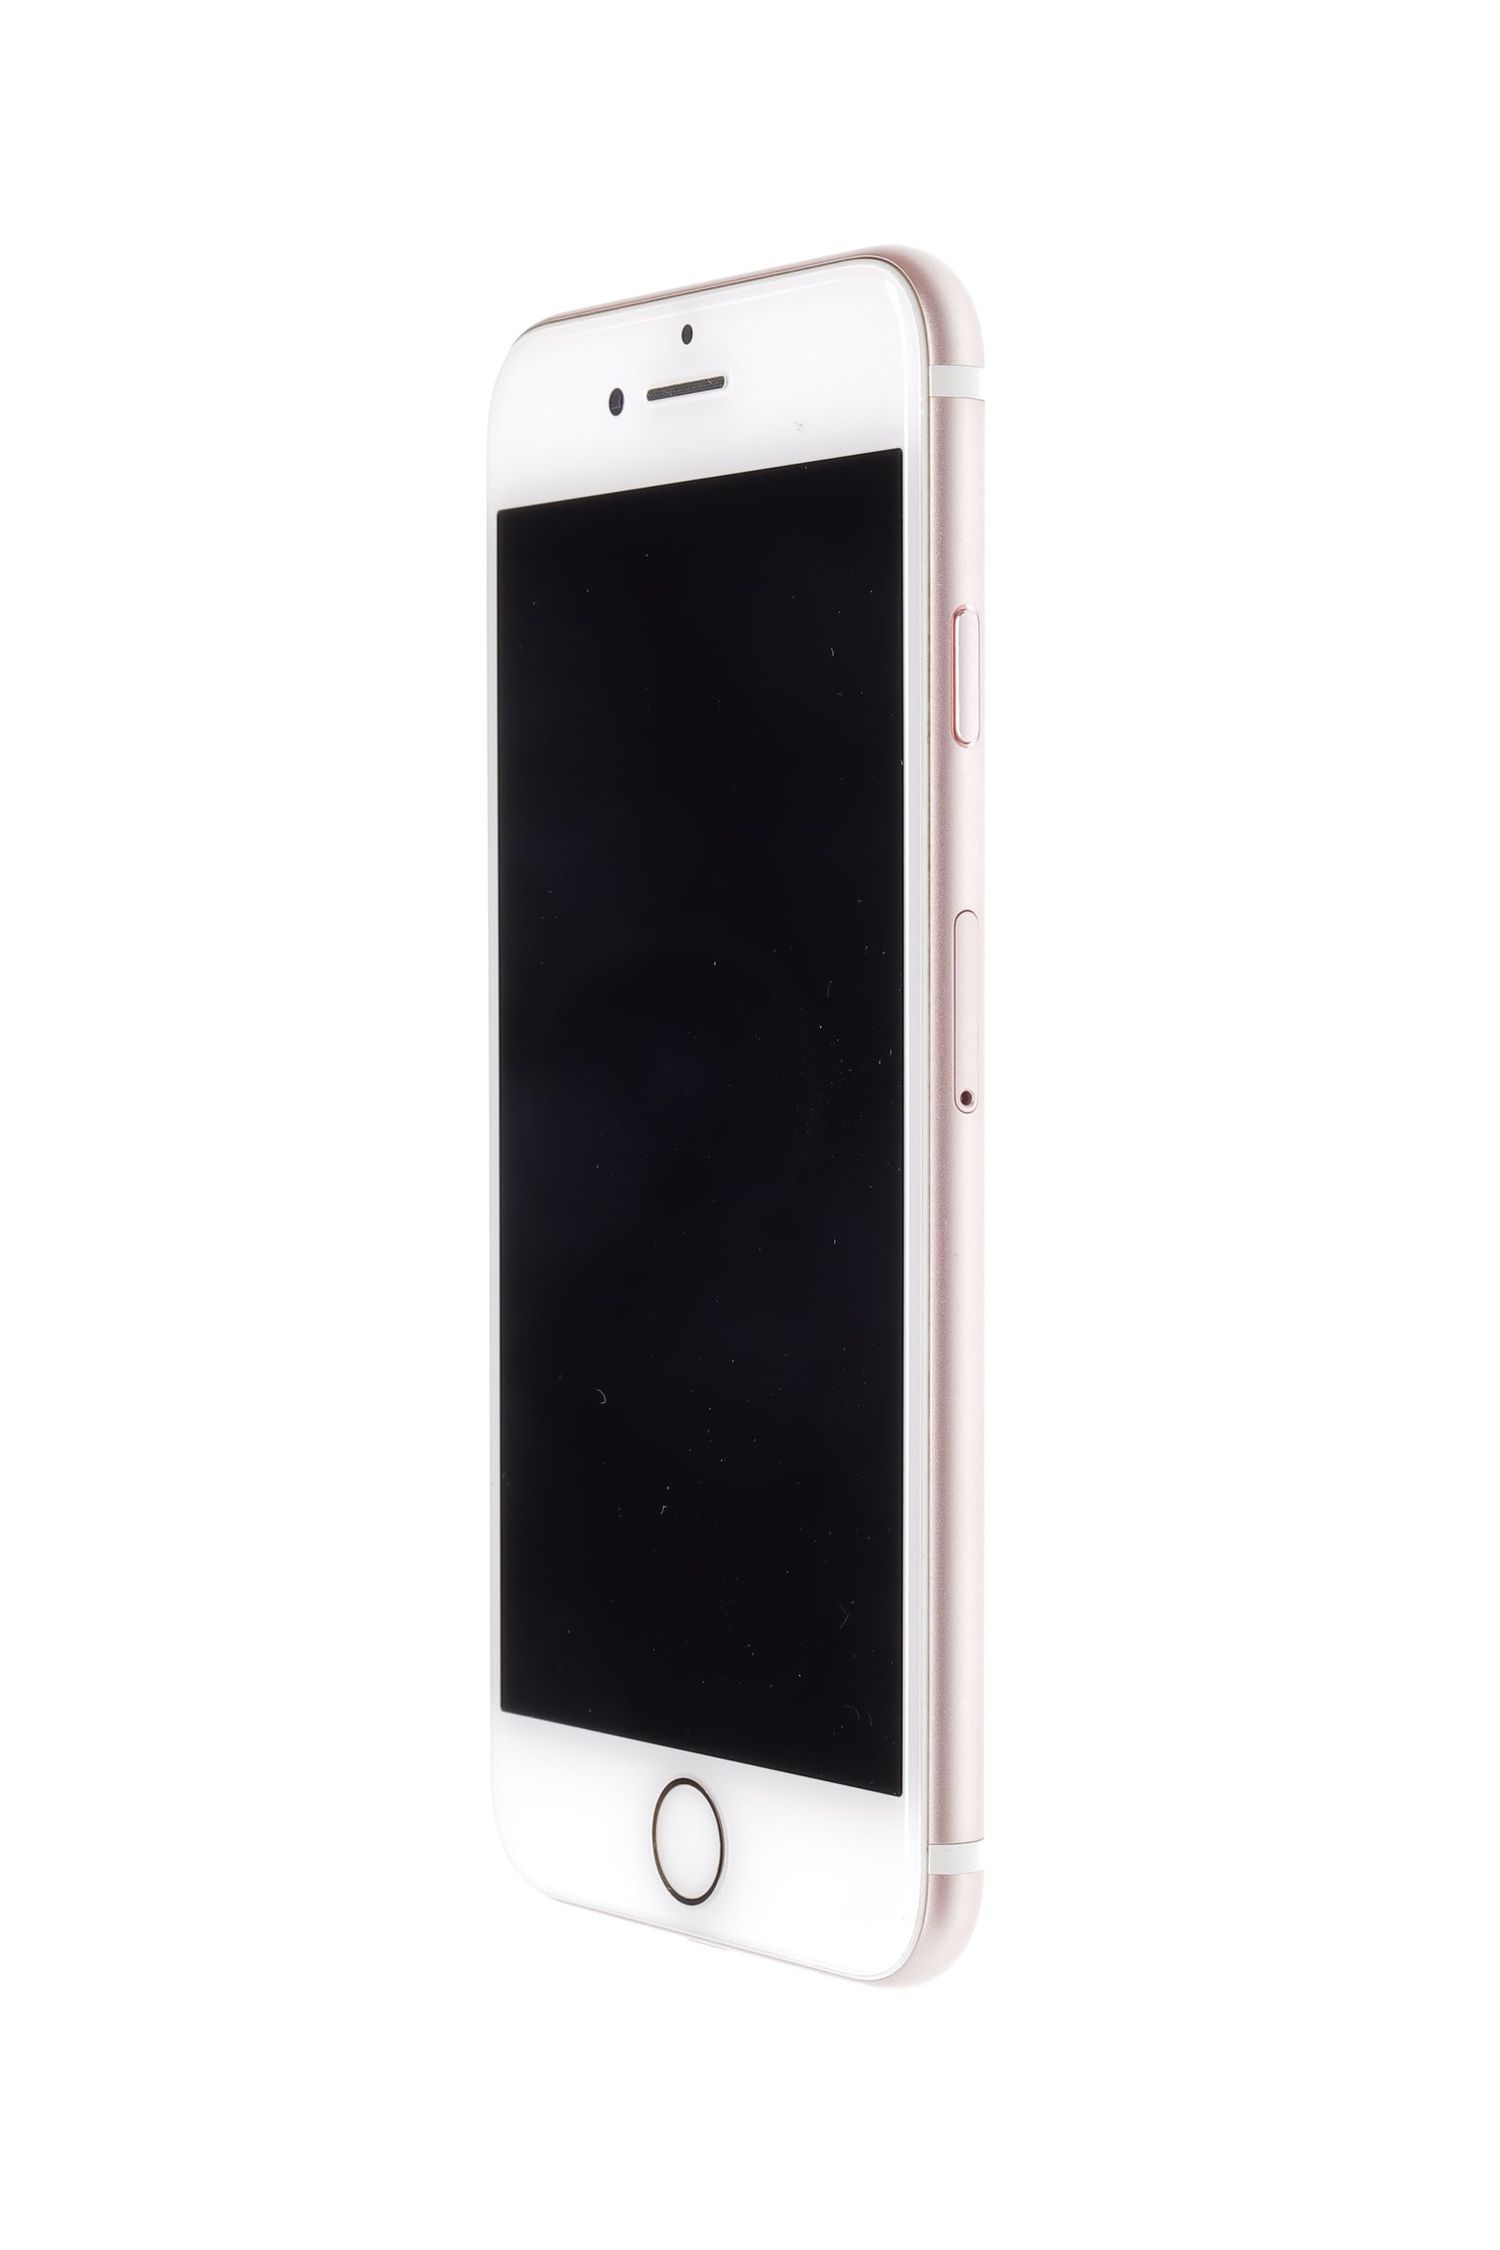 Κινητό τηλέφωνο Apple iPhone 7, Rose Gold, 256 GB, Ca Nou